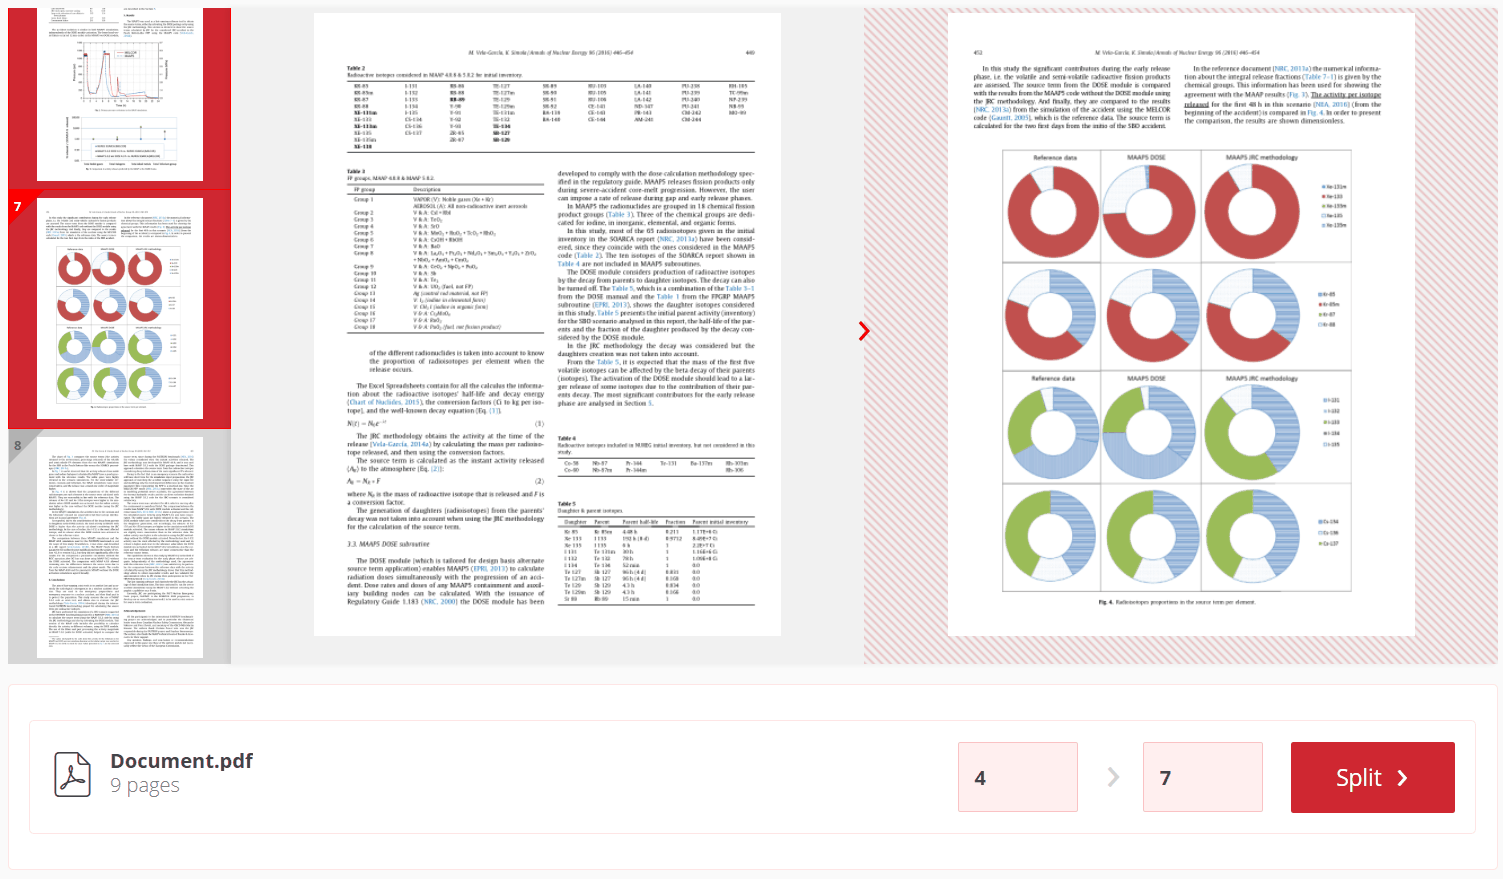 Clique e selecione o (s) intervalo (s) de páginas para extrair em arquivos PDF individuais menores